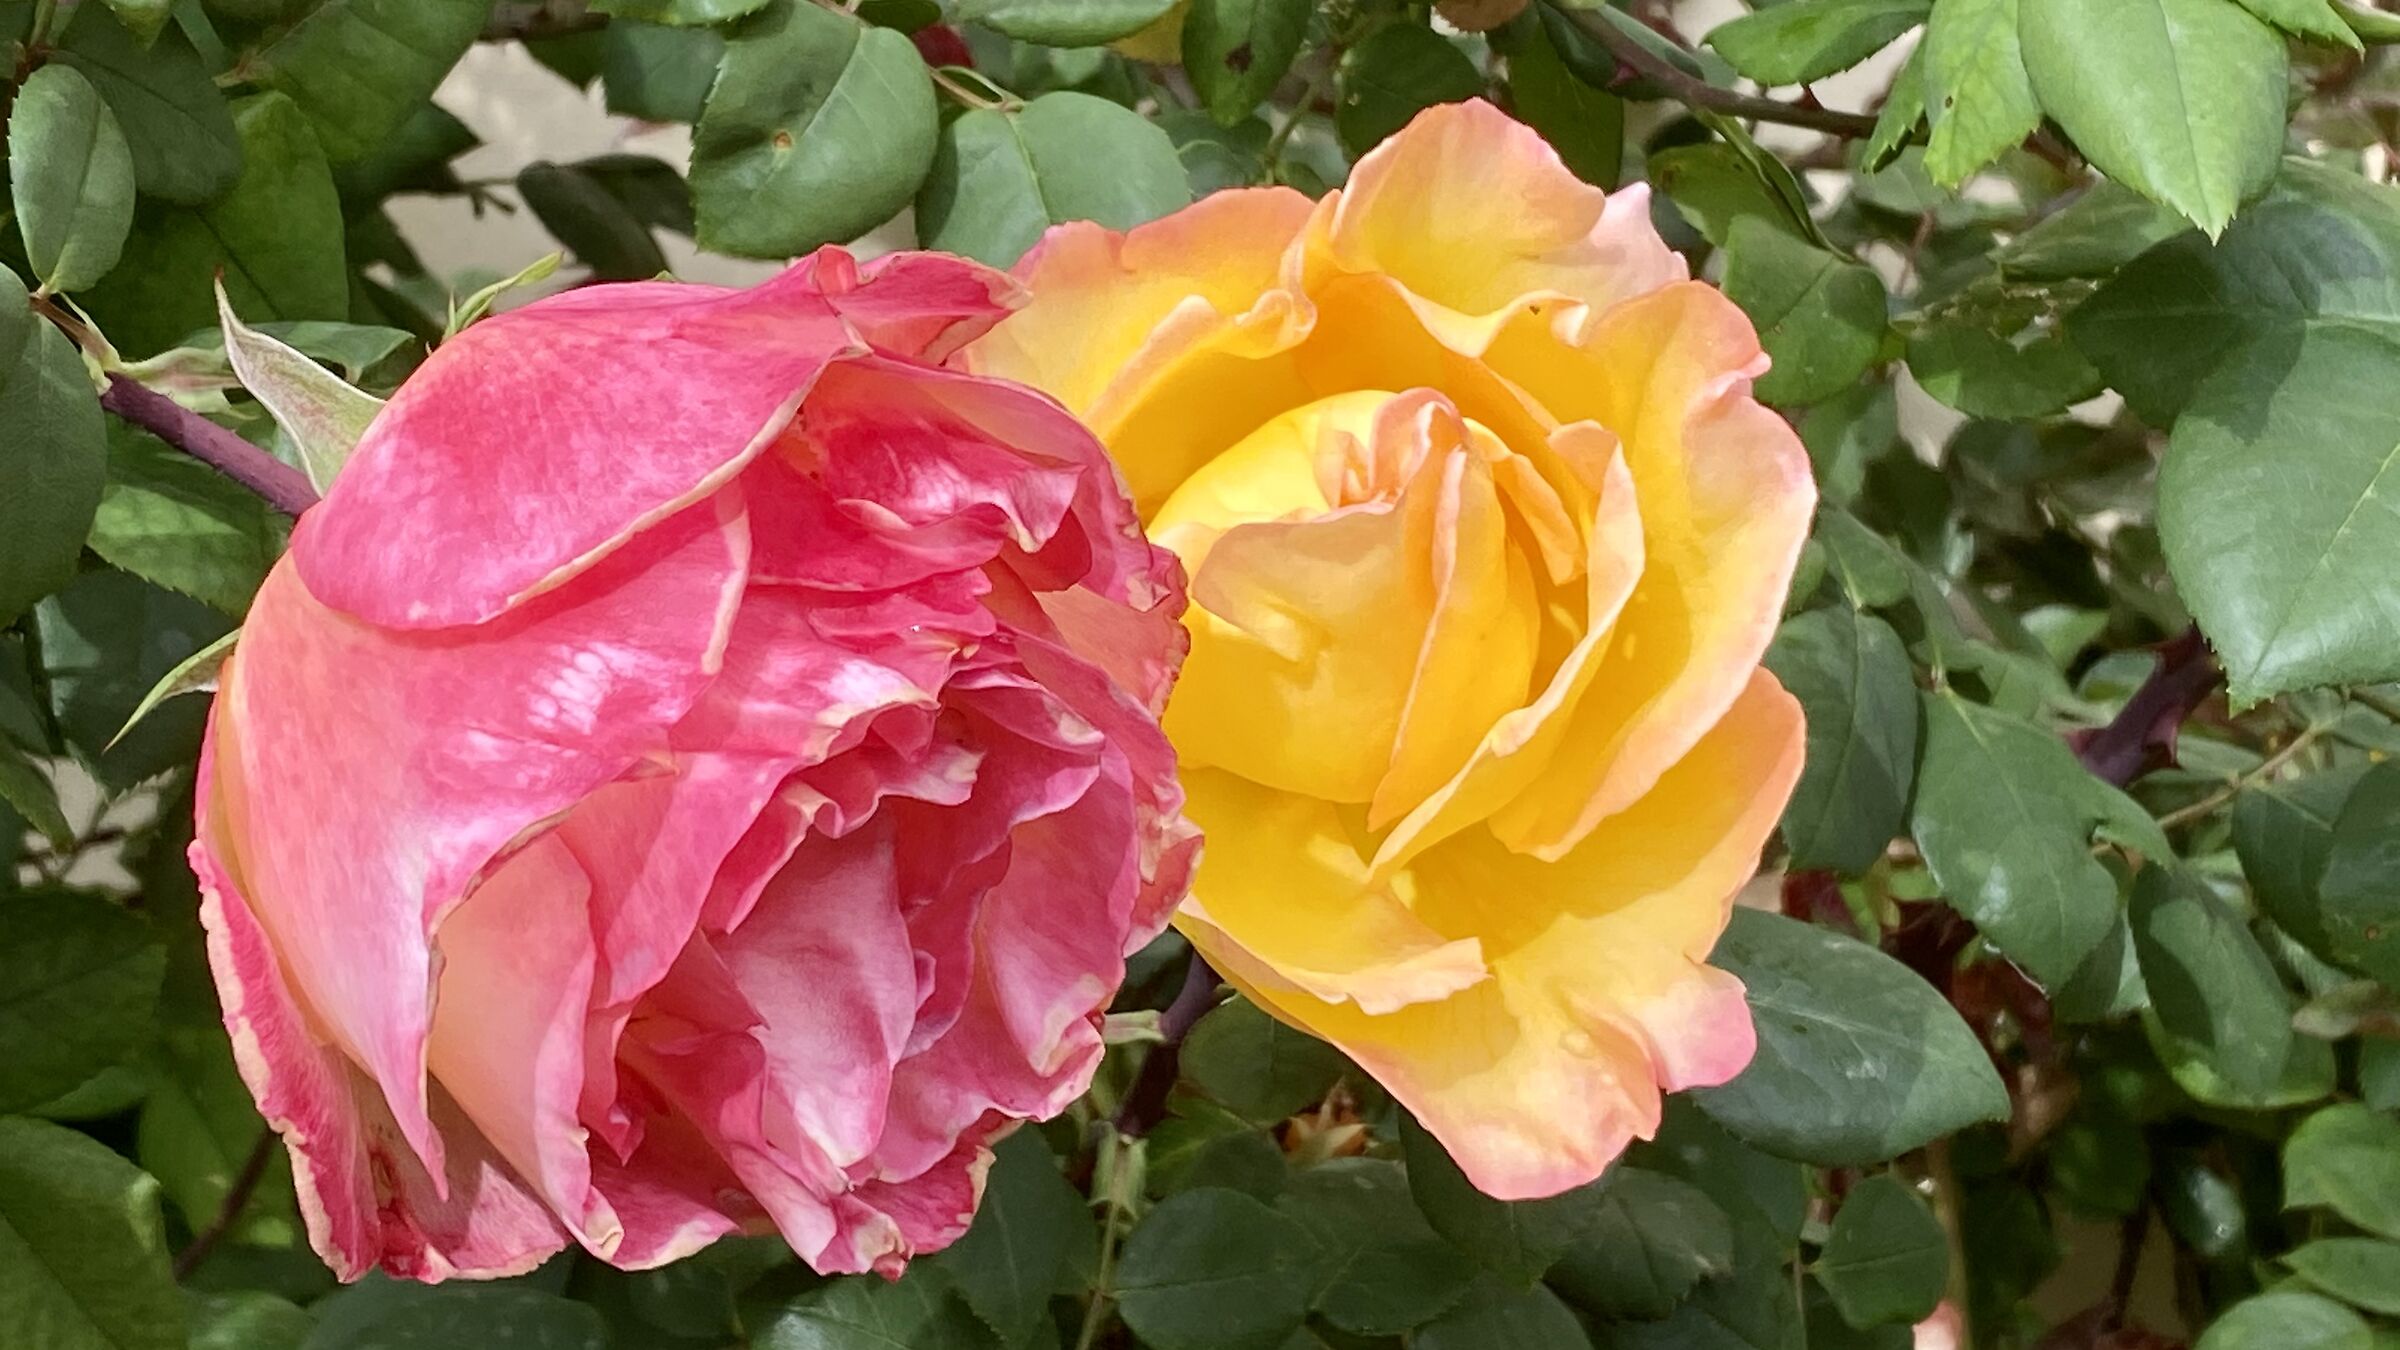 Pair of roses...